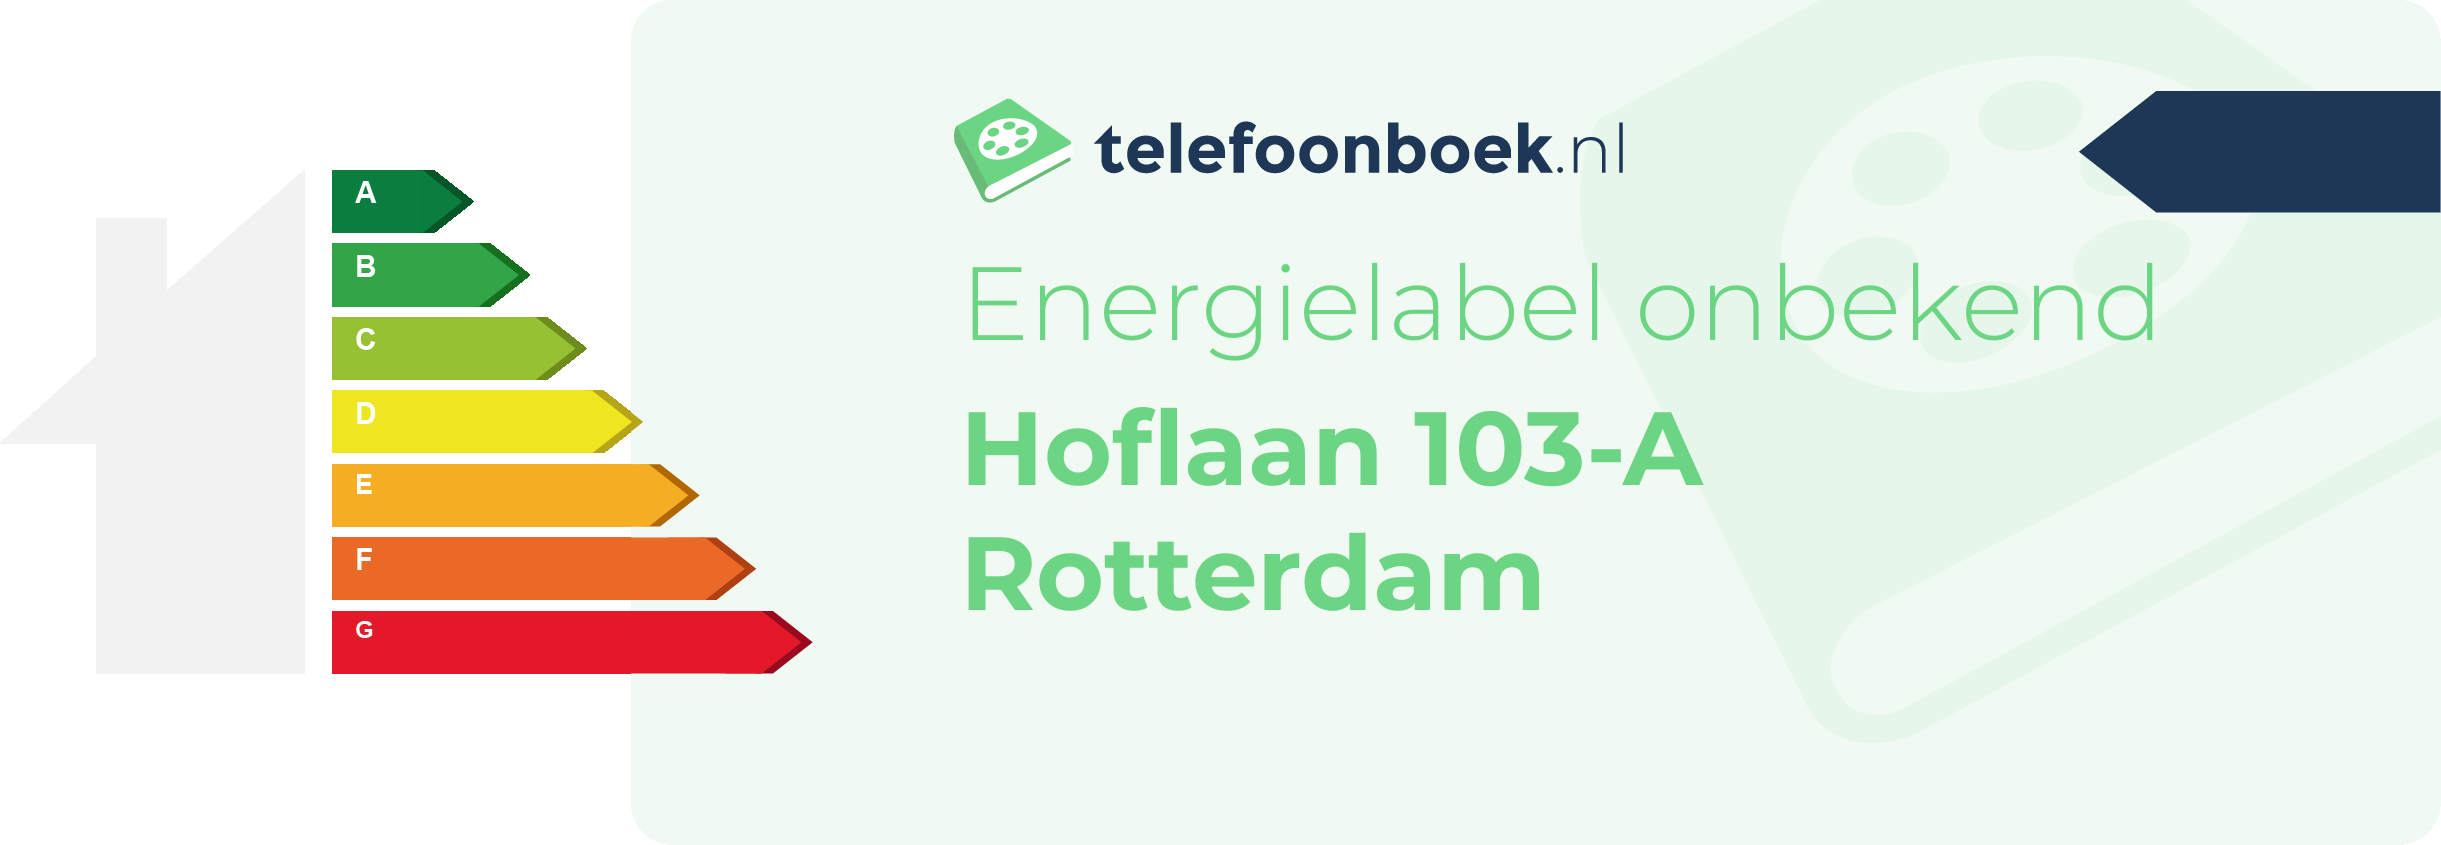 Energielabel Hoflaan 103-A Rotterdam